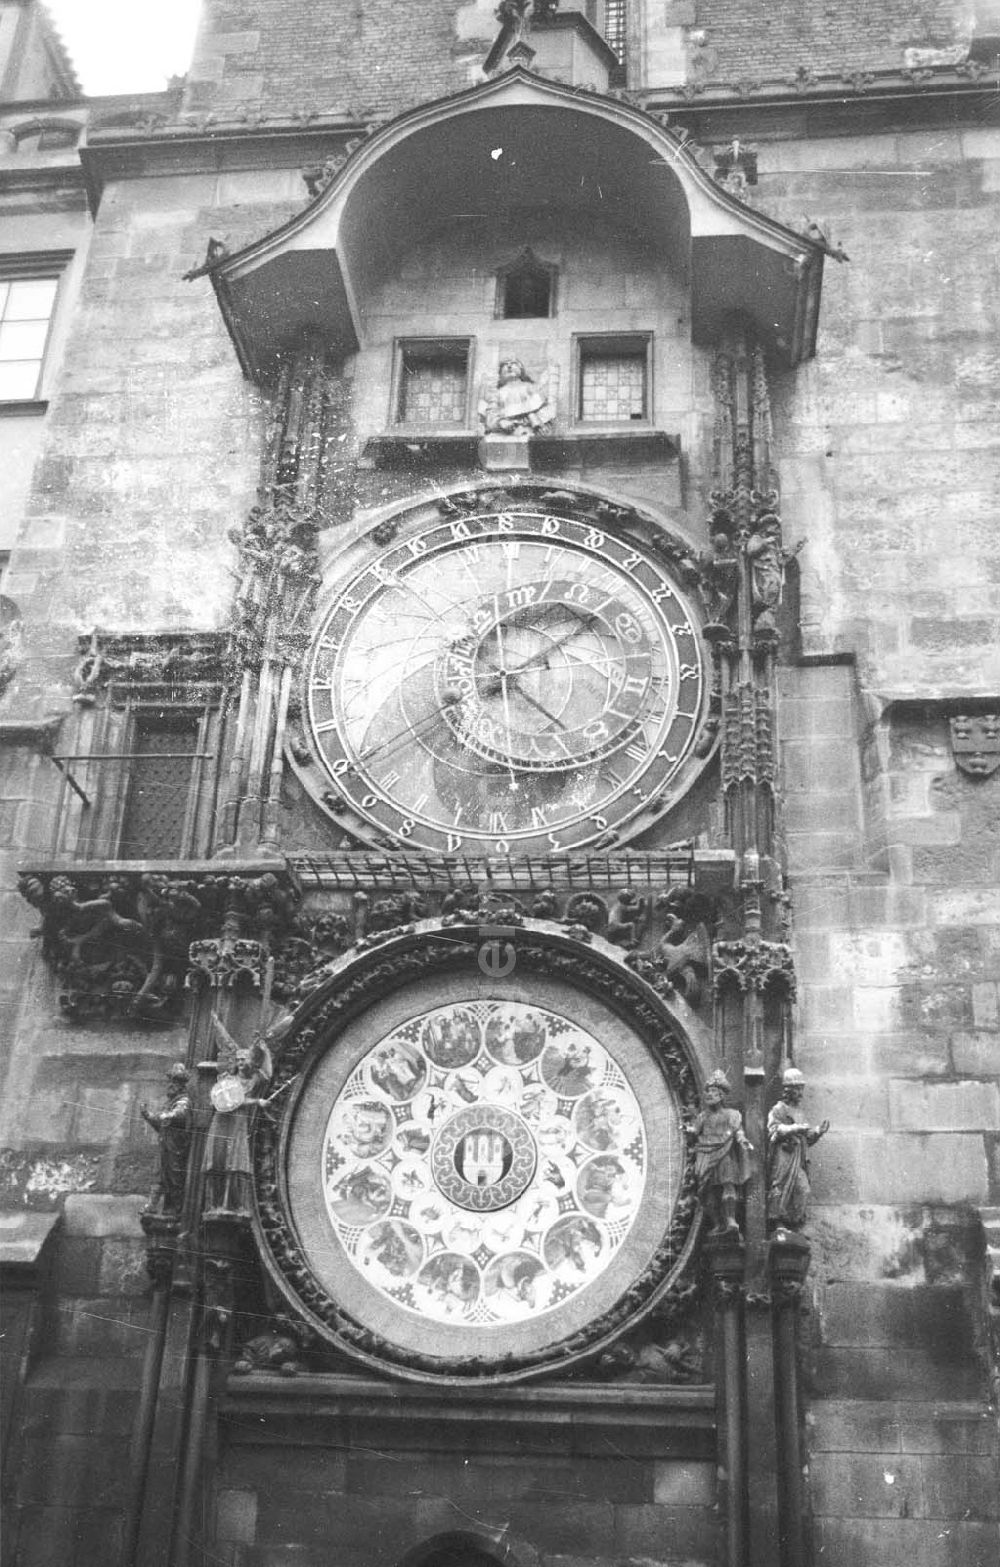 Prag: Astronomische Uhr, Prager Orloj, an der Süd-Mauer vom alten Rathaus in Prag (Praha), Hauptstadt der Tschechoslowakei CSSR (heute Tschechien). Die ältesten Teile, die mechanische Uhr sowie das astronomische Zifferblatt, stammt aus dem Jahr 141